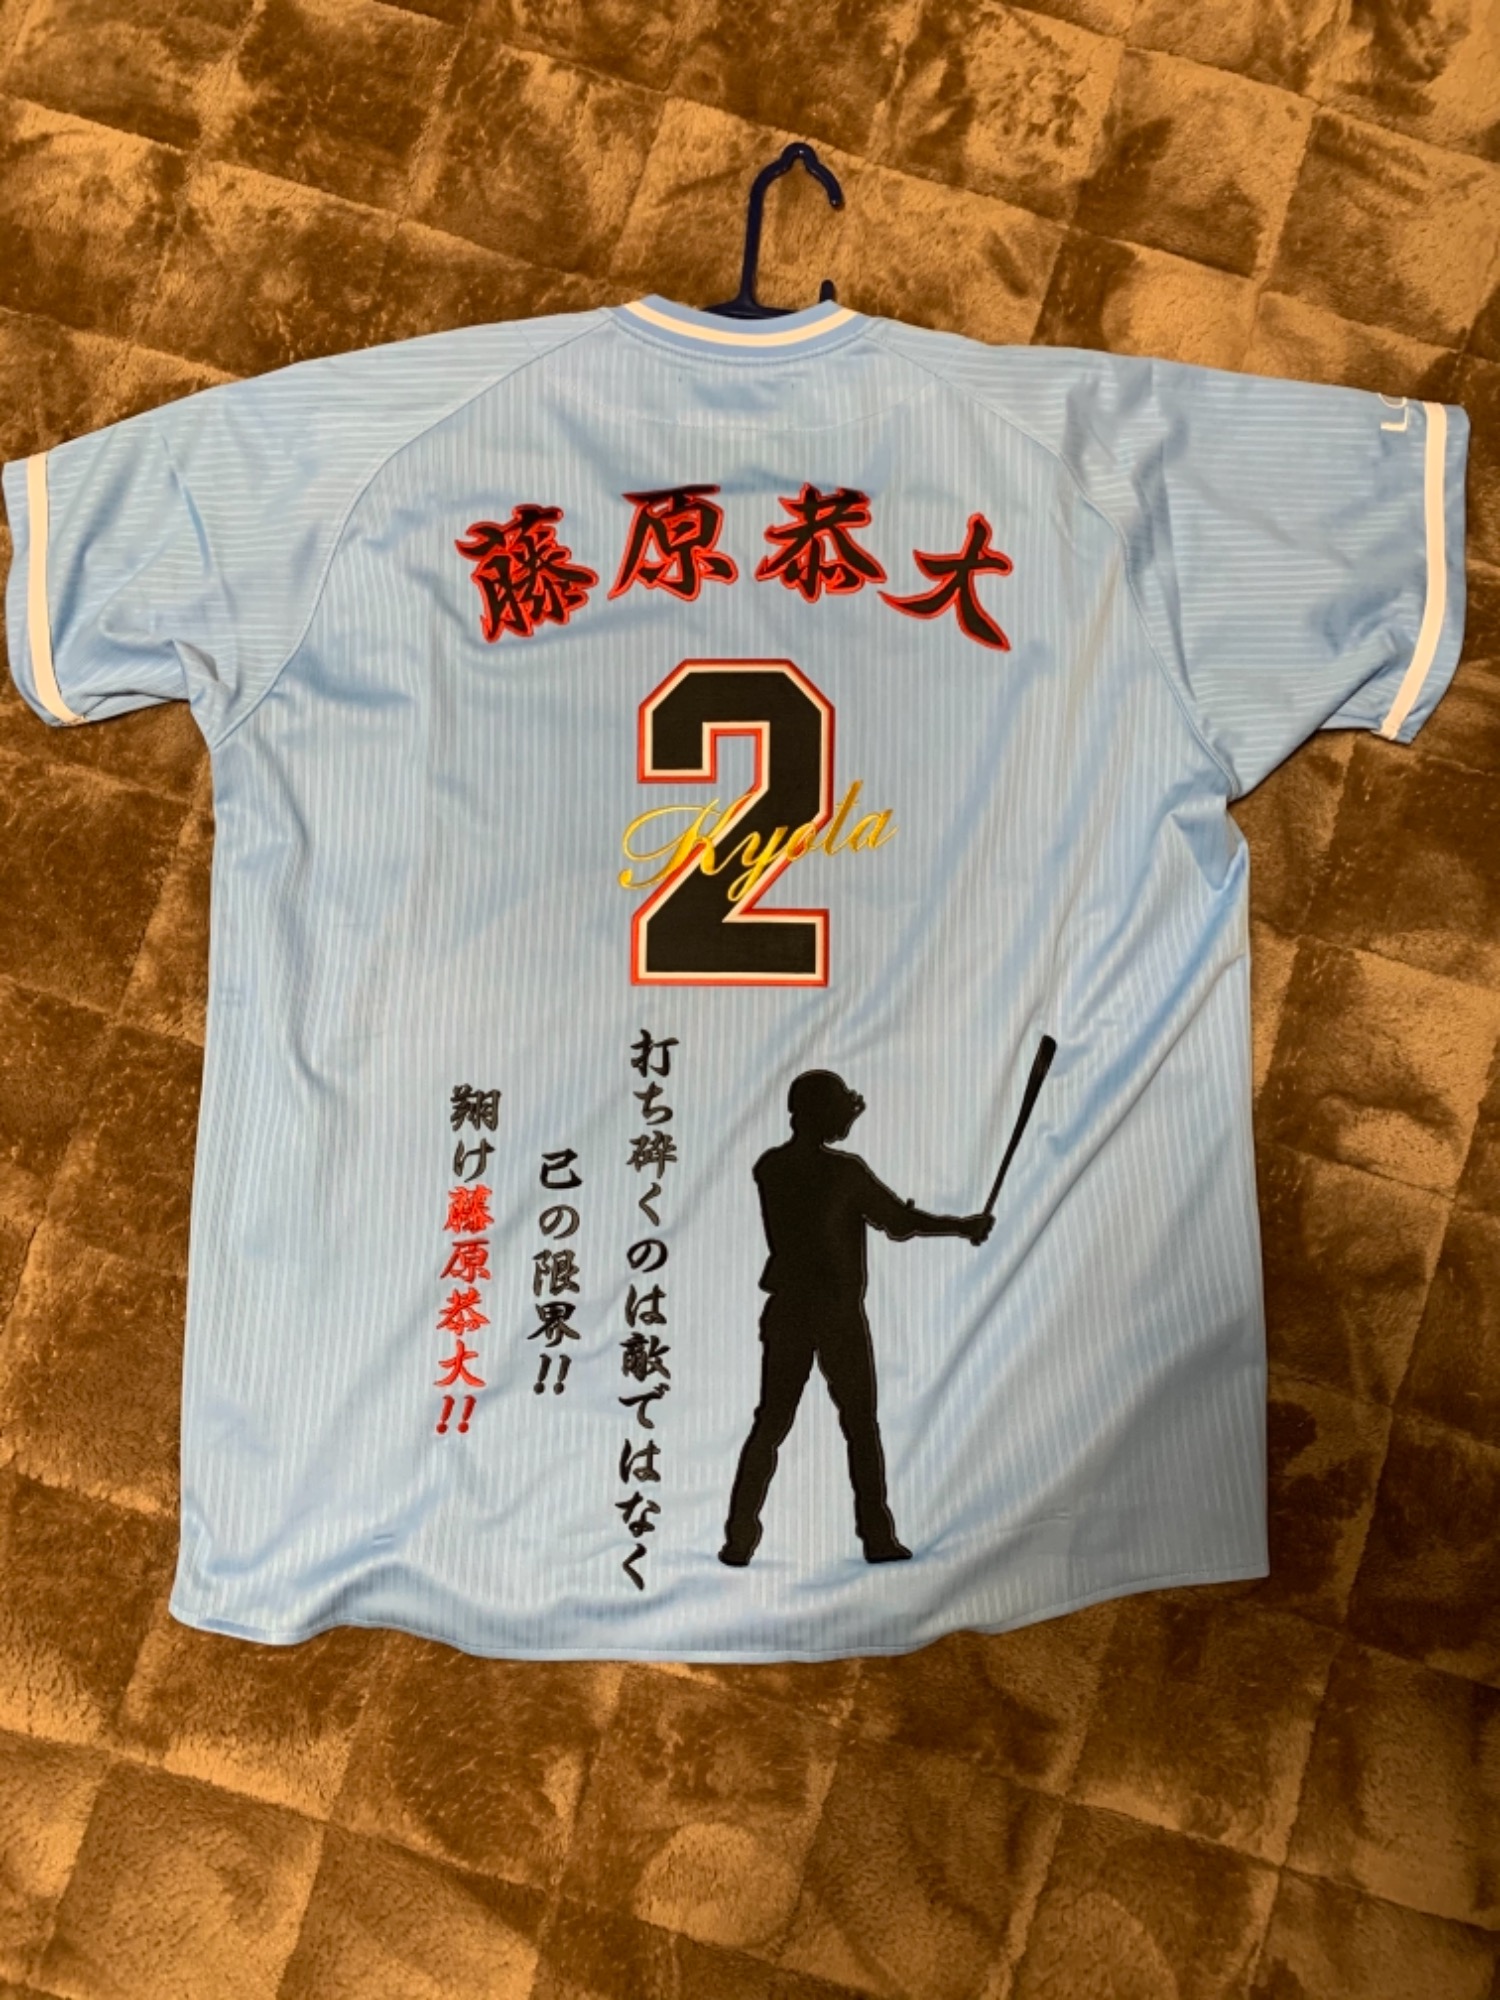 千葉ロッテマリーンズの藤原恭大選手の背番号「2」のユニフォームです 